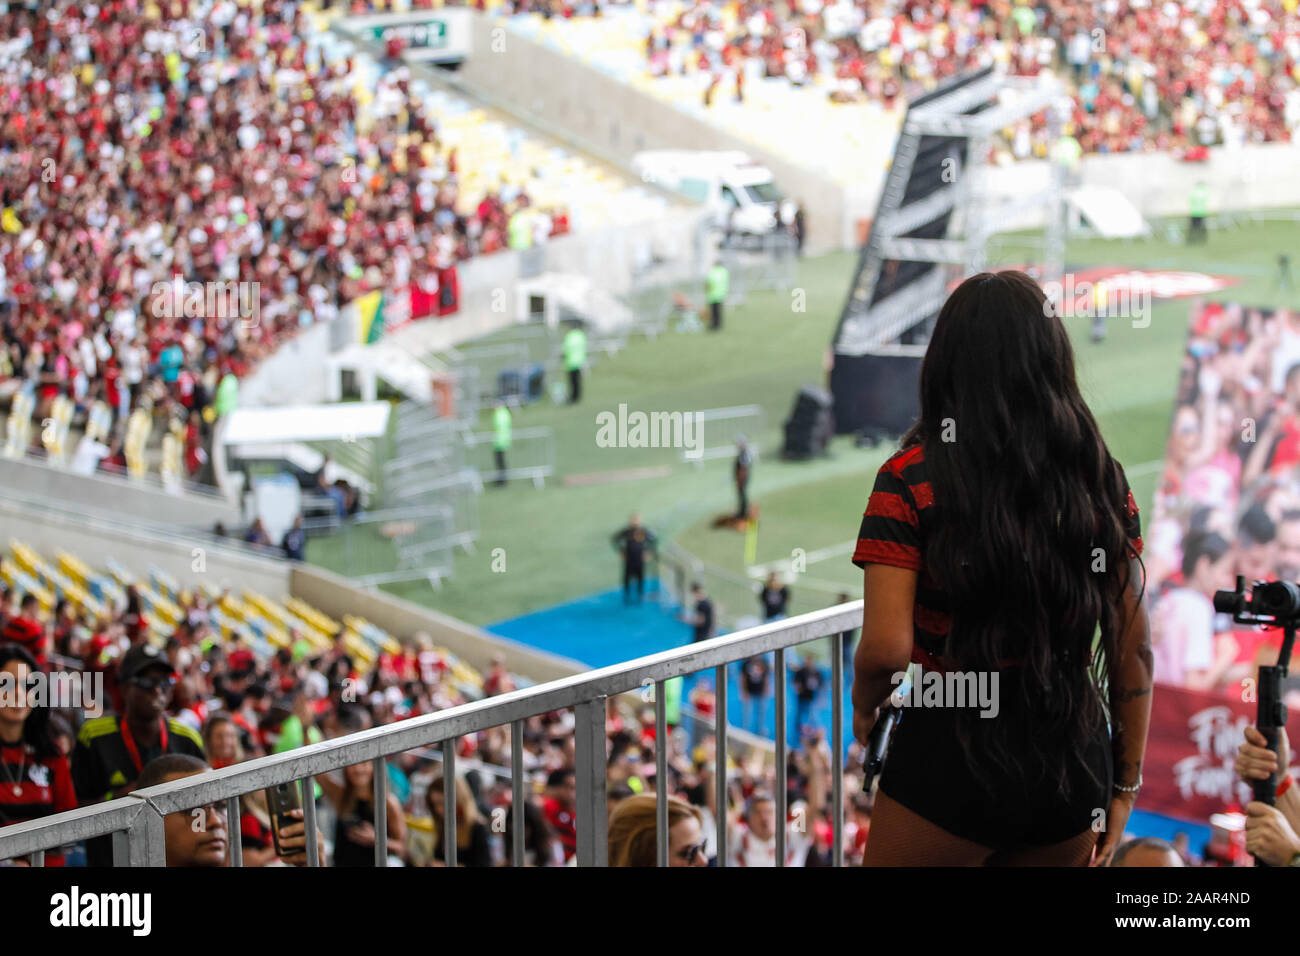 No fans allowed at Copa Libertadores final in Rio de Janeiro